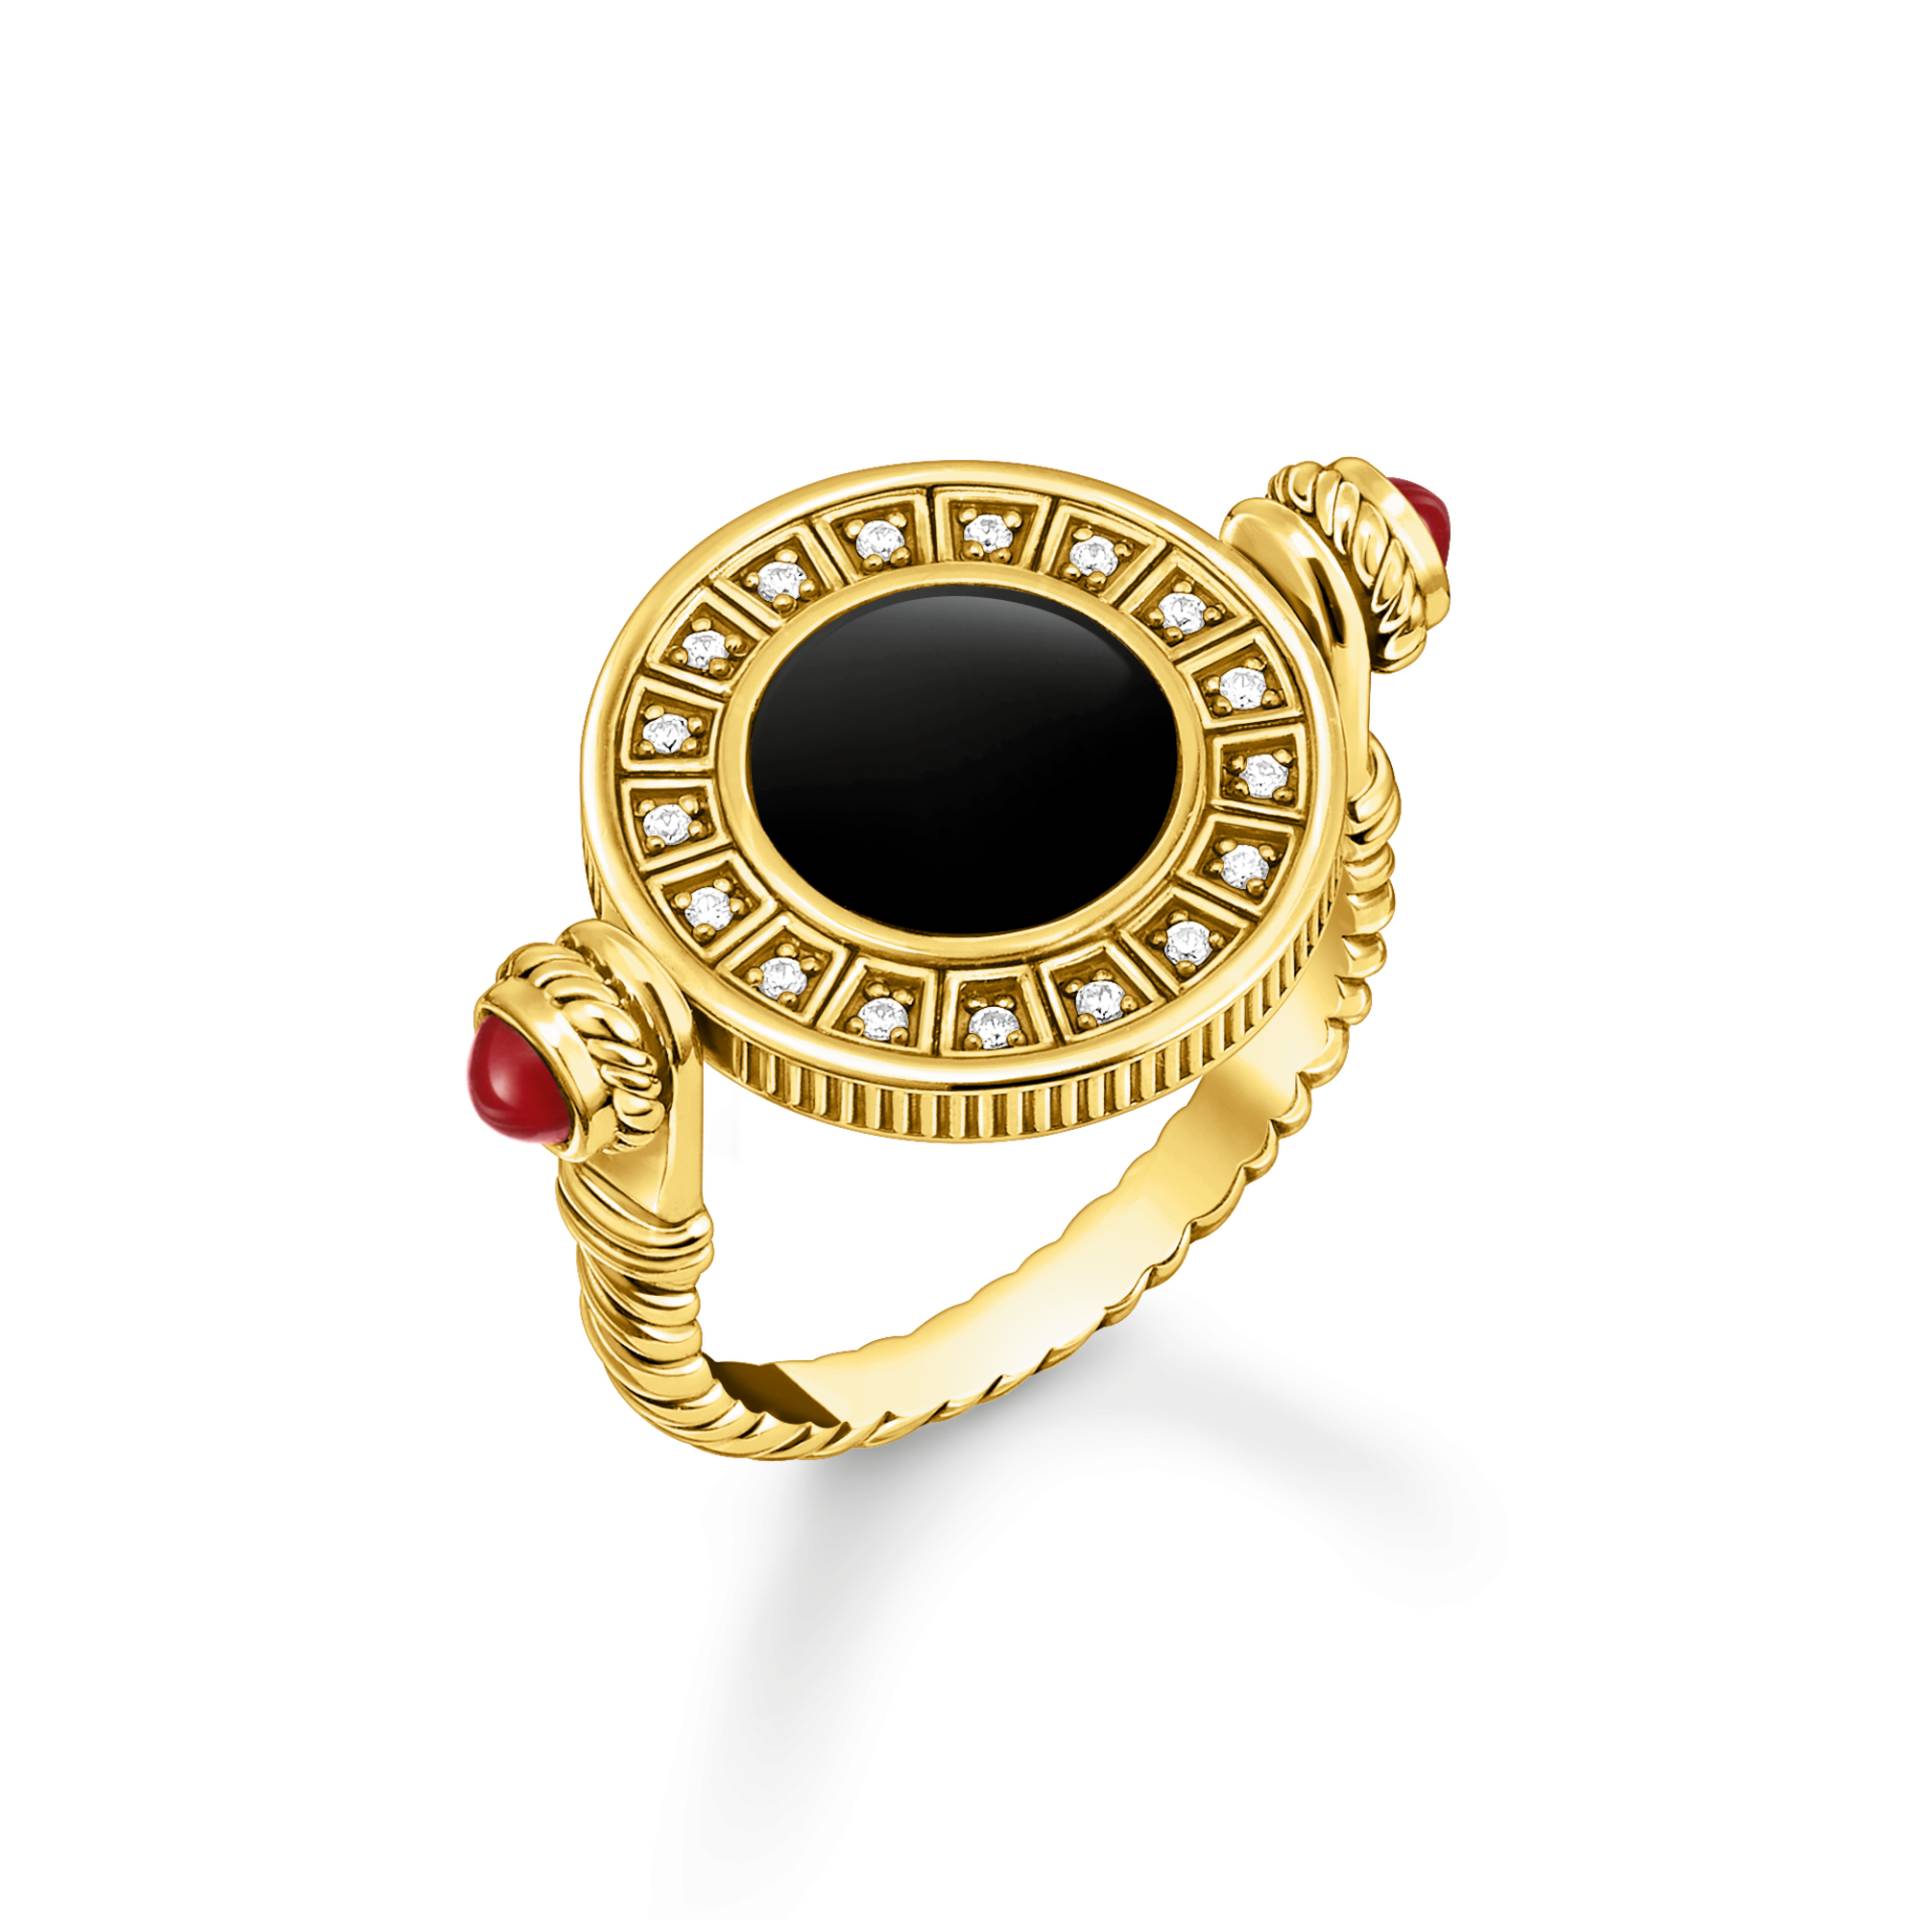 Thomas Sabo Ring drehbar mit schwarzem Onyx und weißen Steinen vergoldet mehrfarbig TR2427-522-7-52 von Thomas Sabo